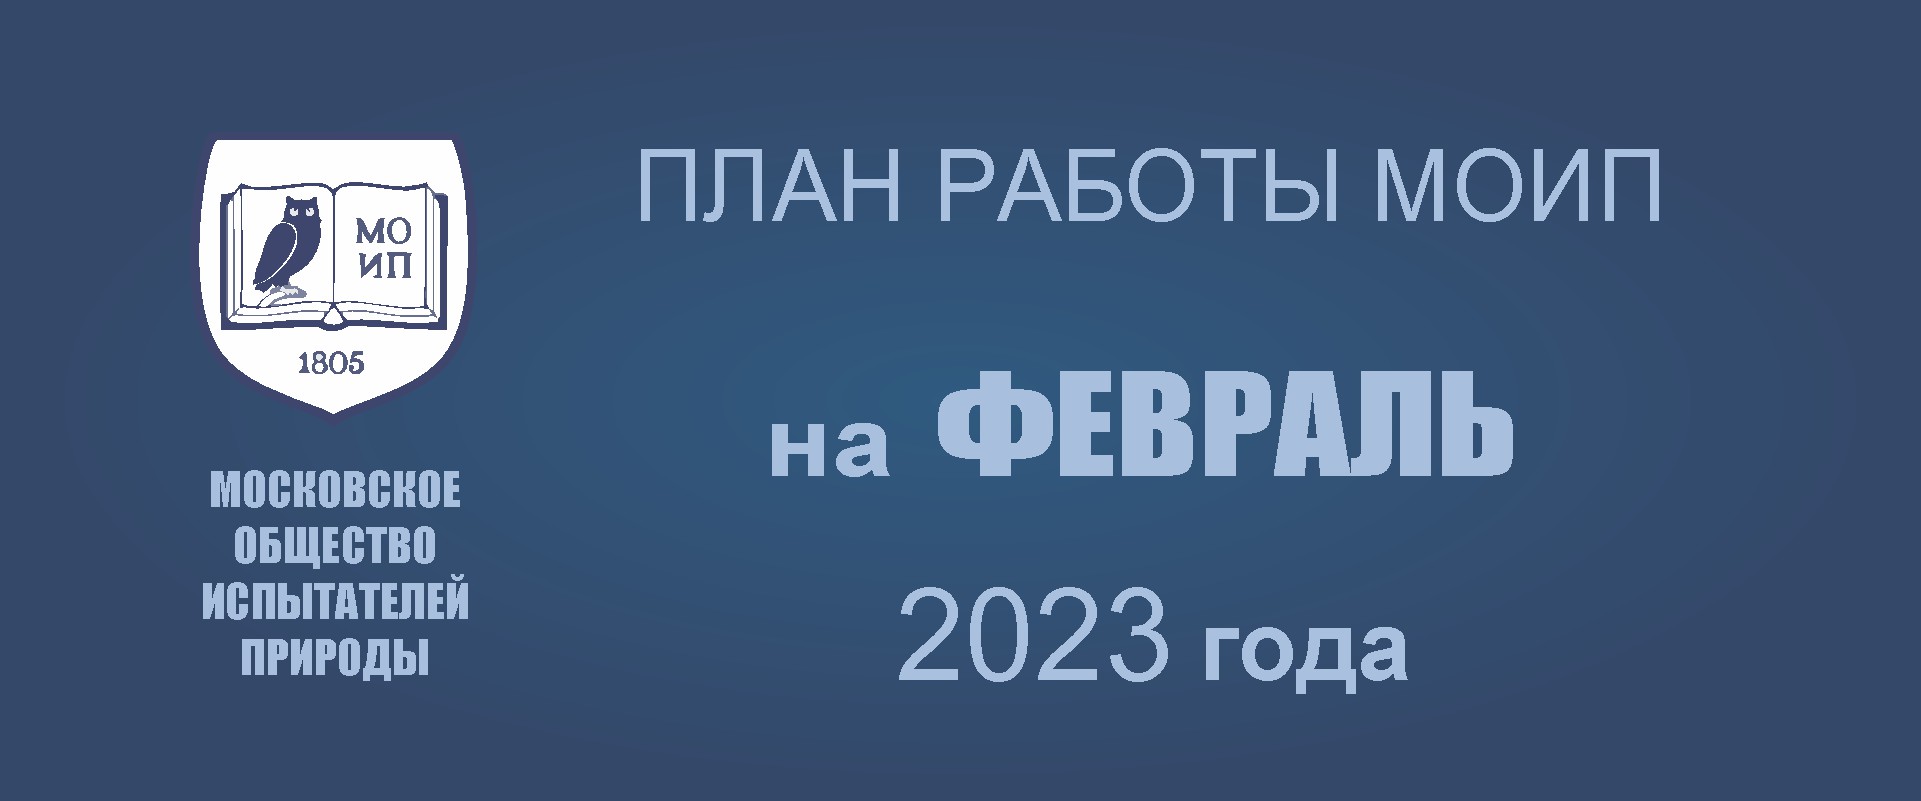 ПЛАН РАБОТЫ на февраль 2023 года